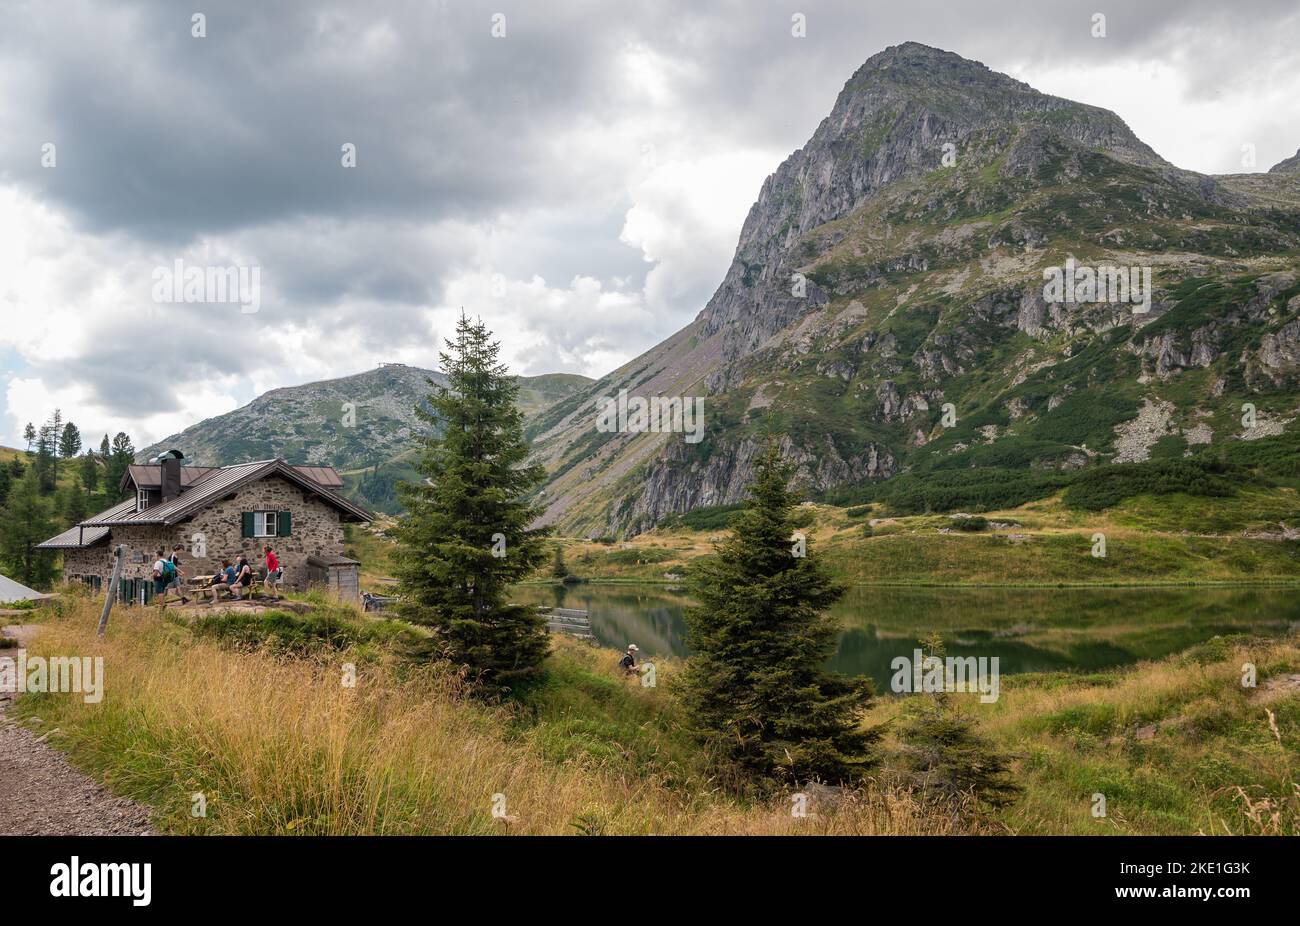 Die Colbricon-Seen im Sommer mit der kleinen Almhütte in der Nähe der Seen - Lagorai-Kette, Provinz Trient, Trentino-Südtirol, Norditalien - Europa - Stockfoto